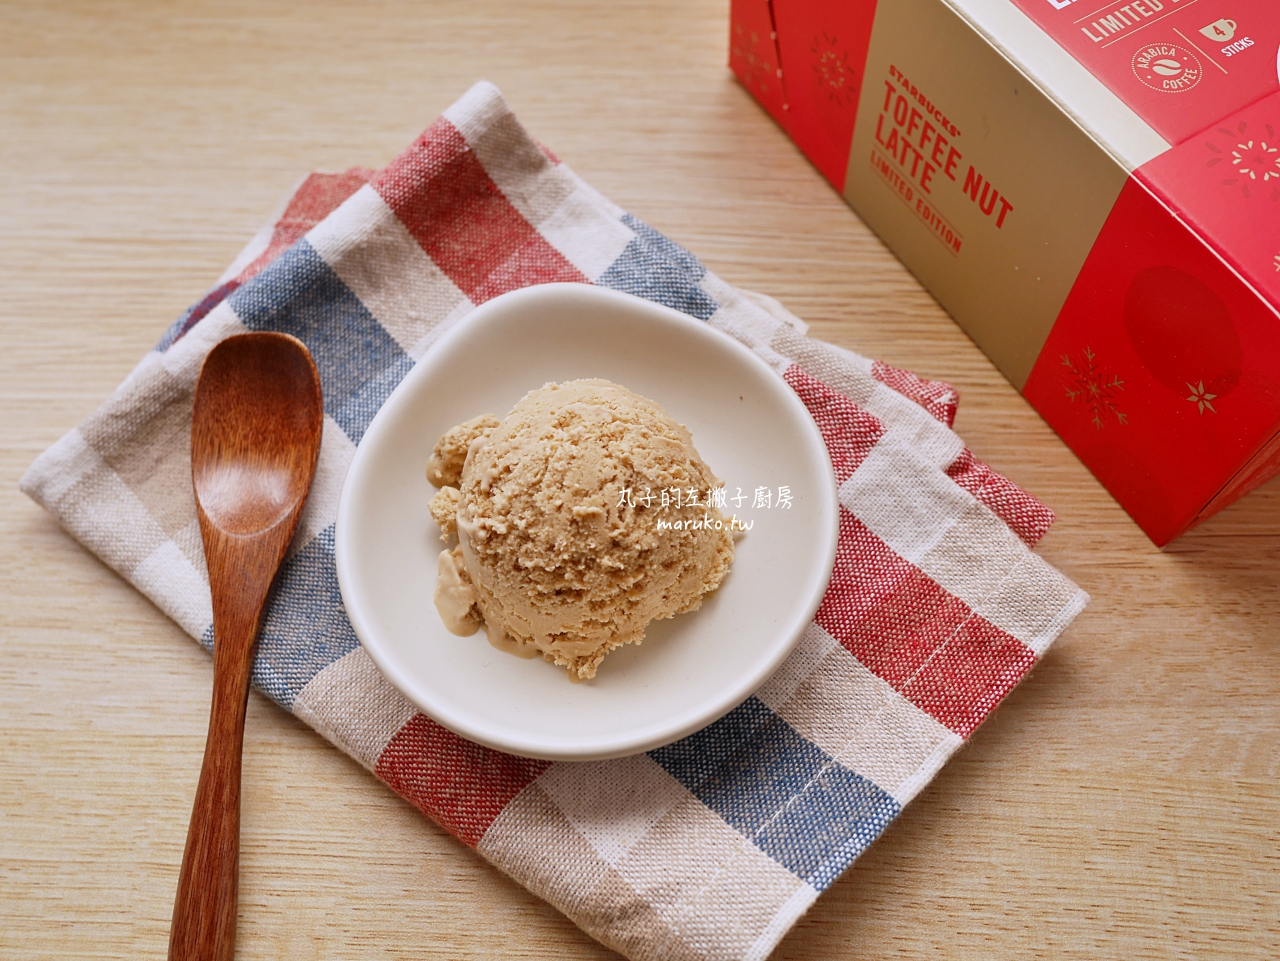 【食譜】太妃核果風味拿鐵冰淇淋 簡單步驟做冰淇淋 鮮奶油食譜 @Maruko與美食有個約會